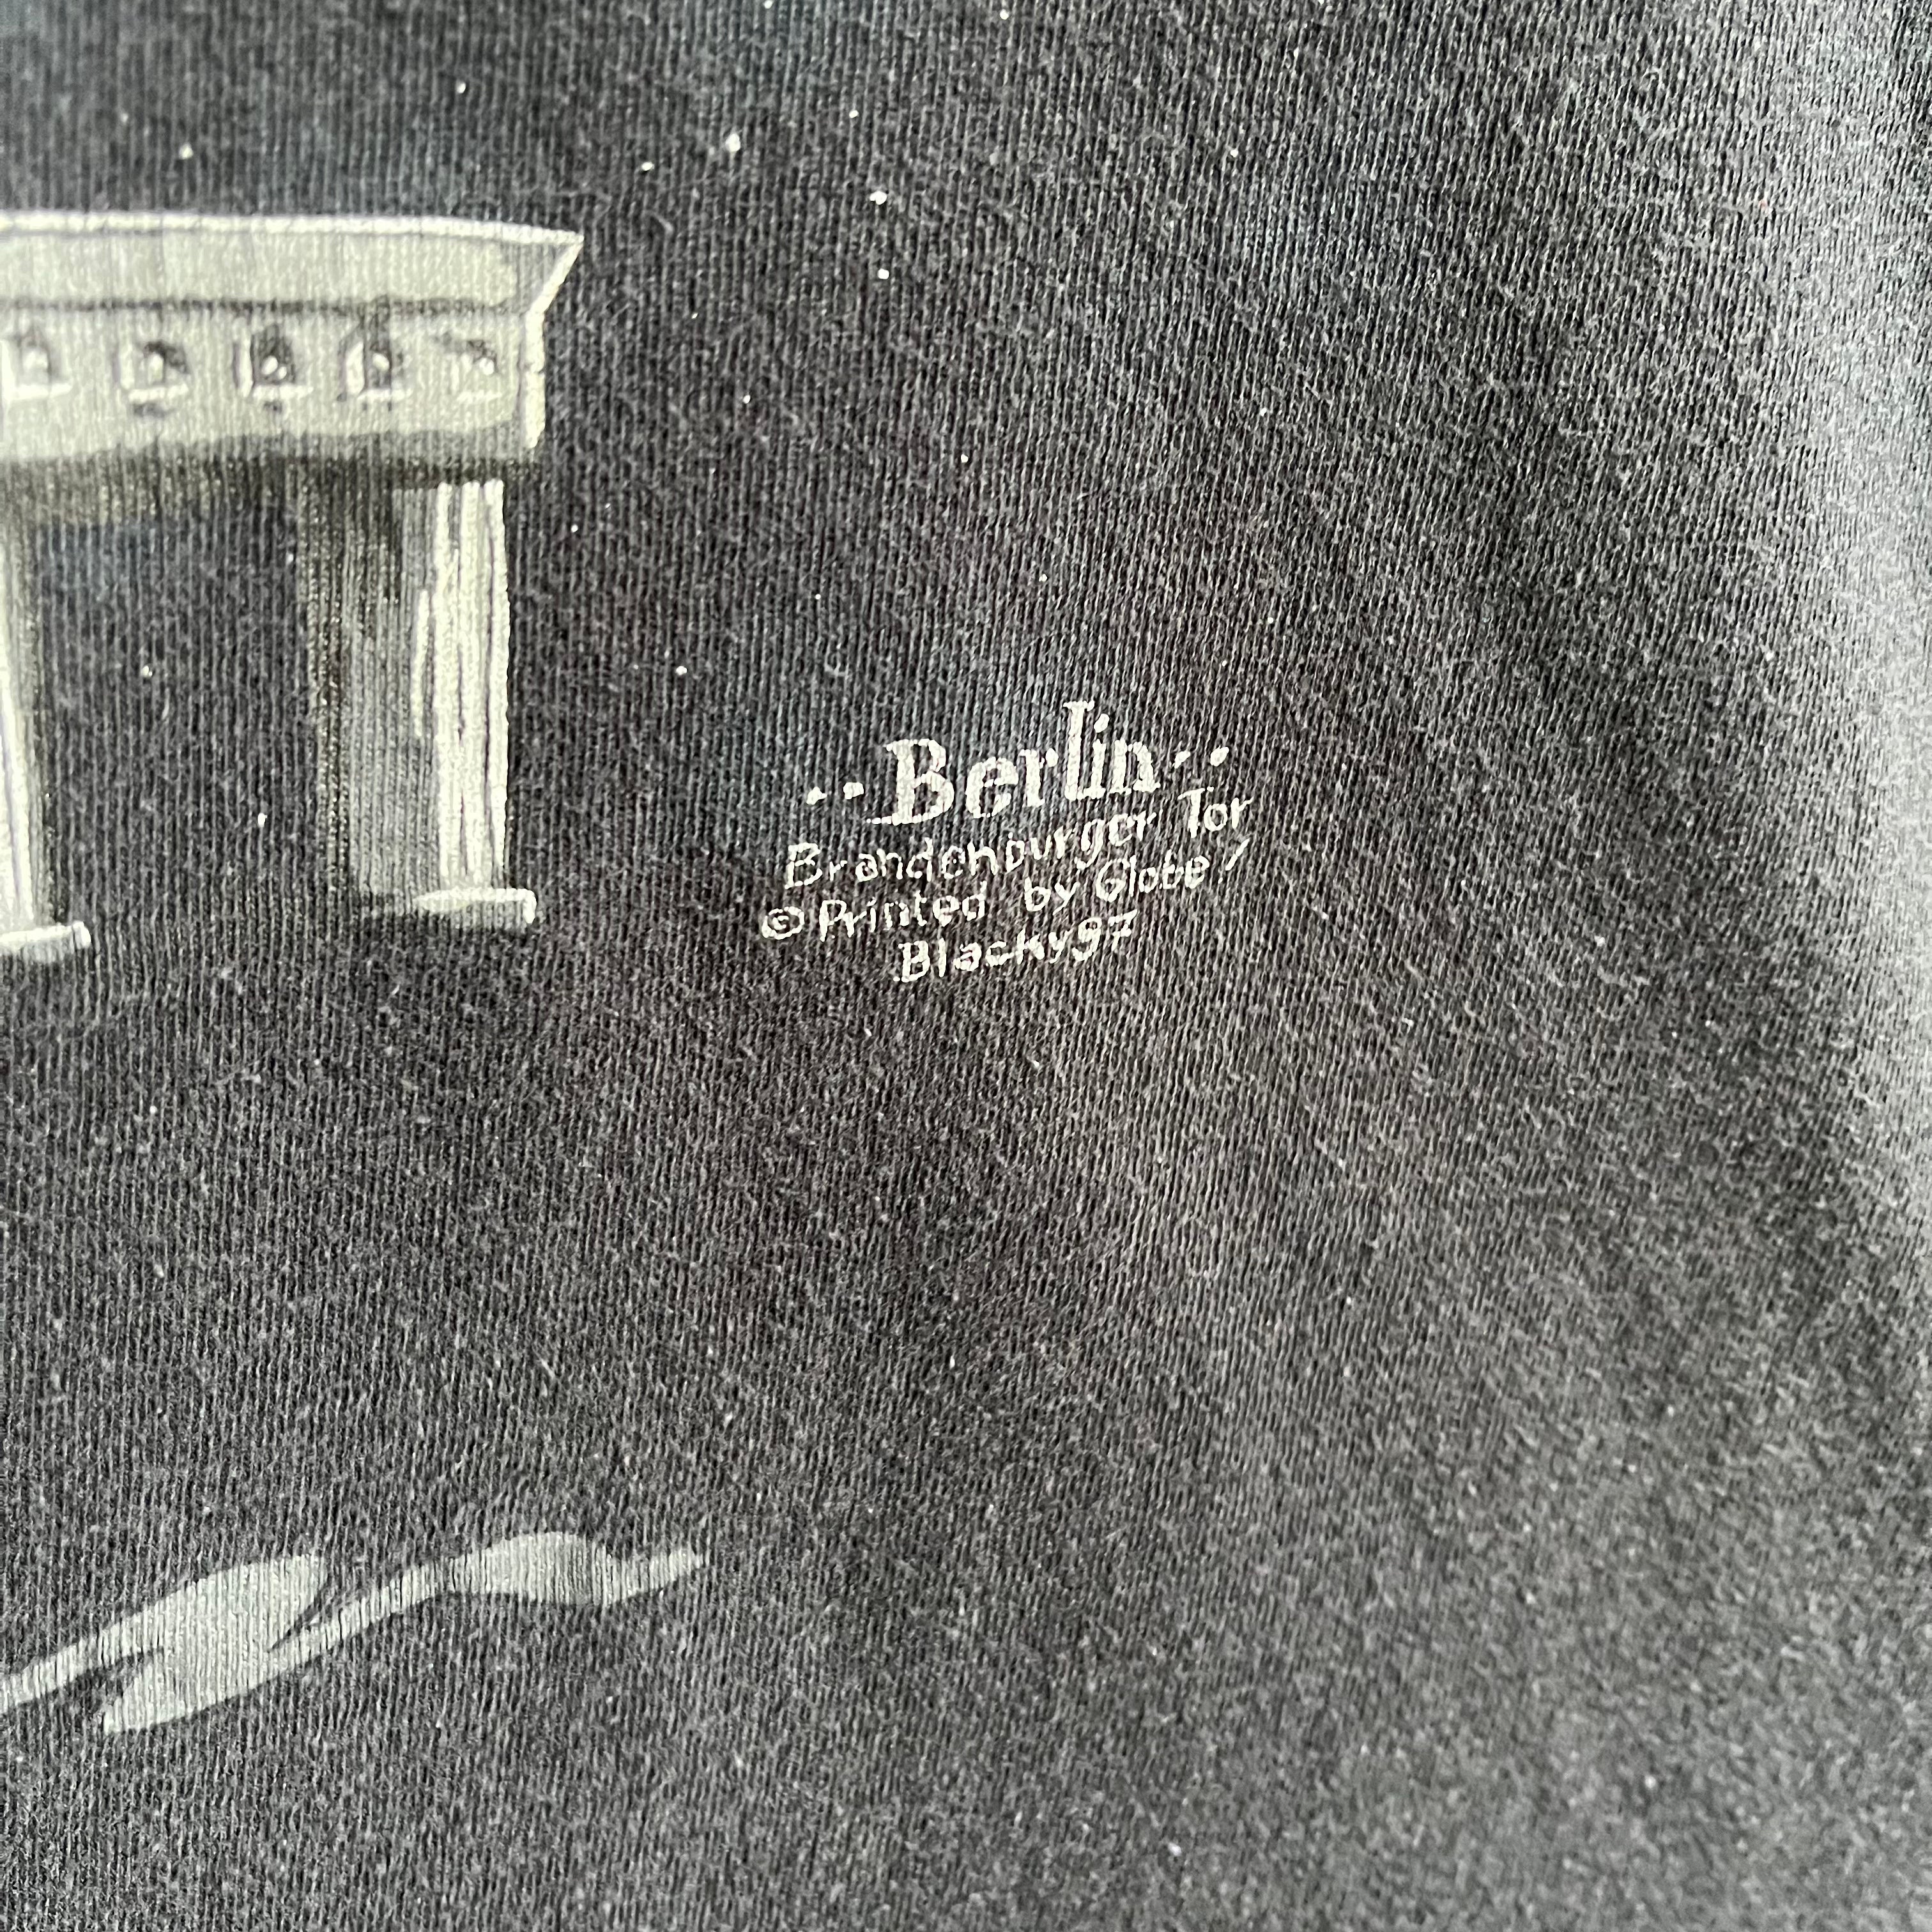 1980s Berlin Tourist T-Shirt